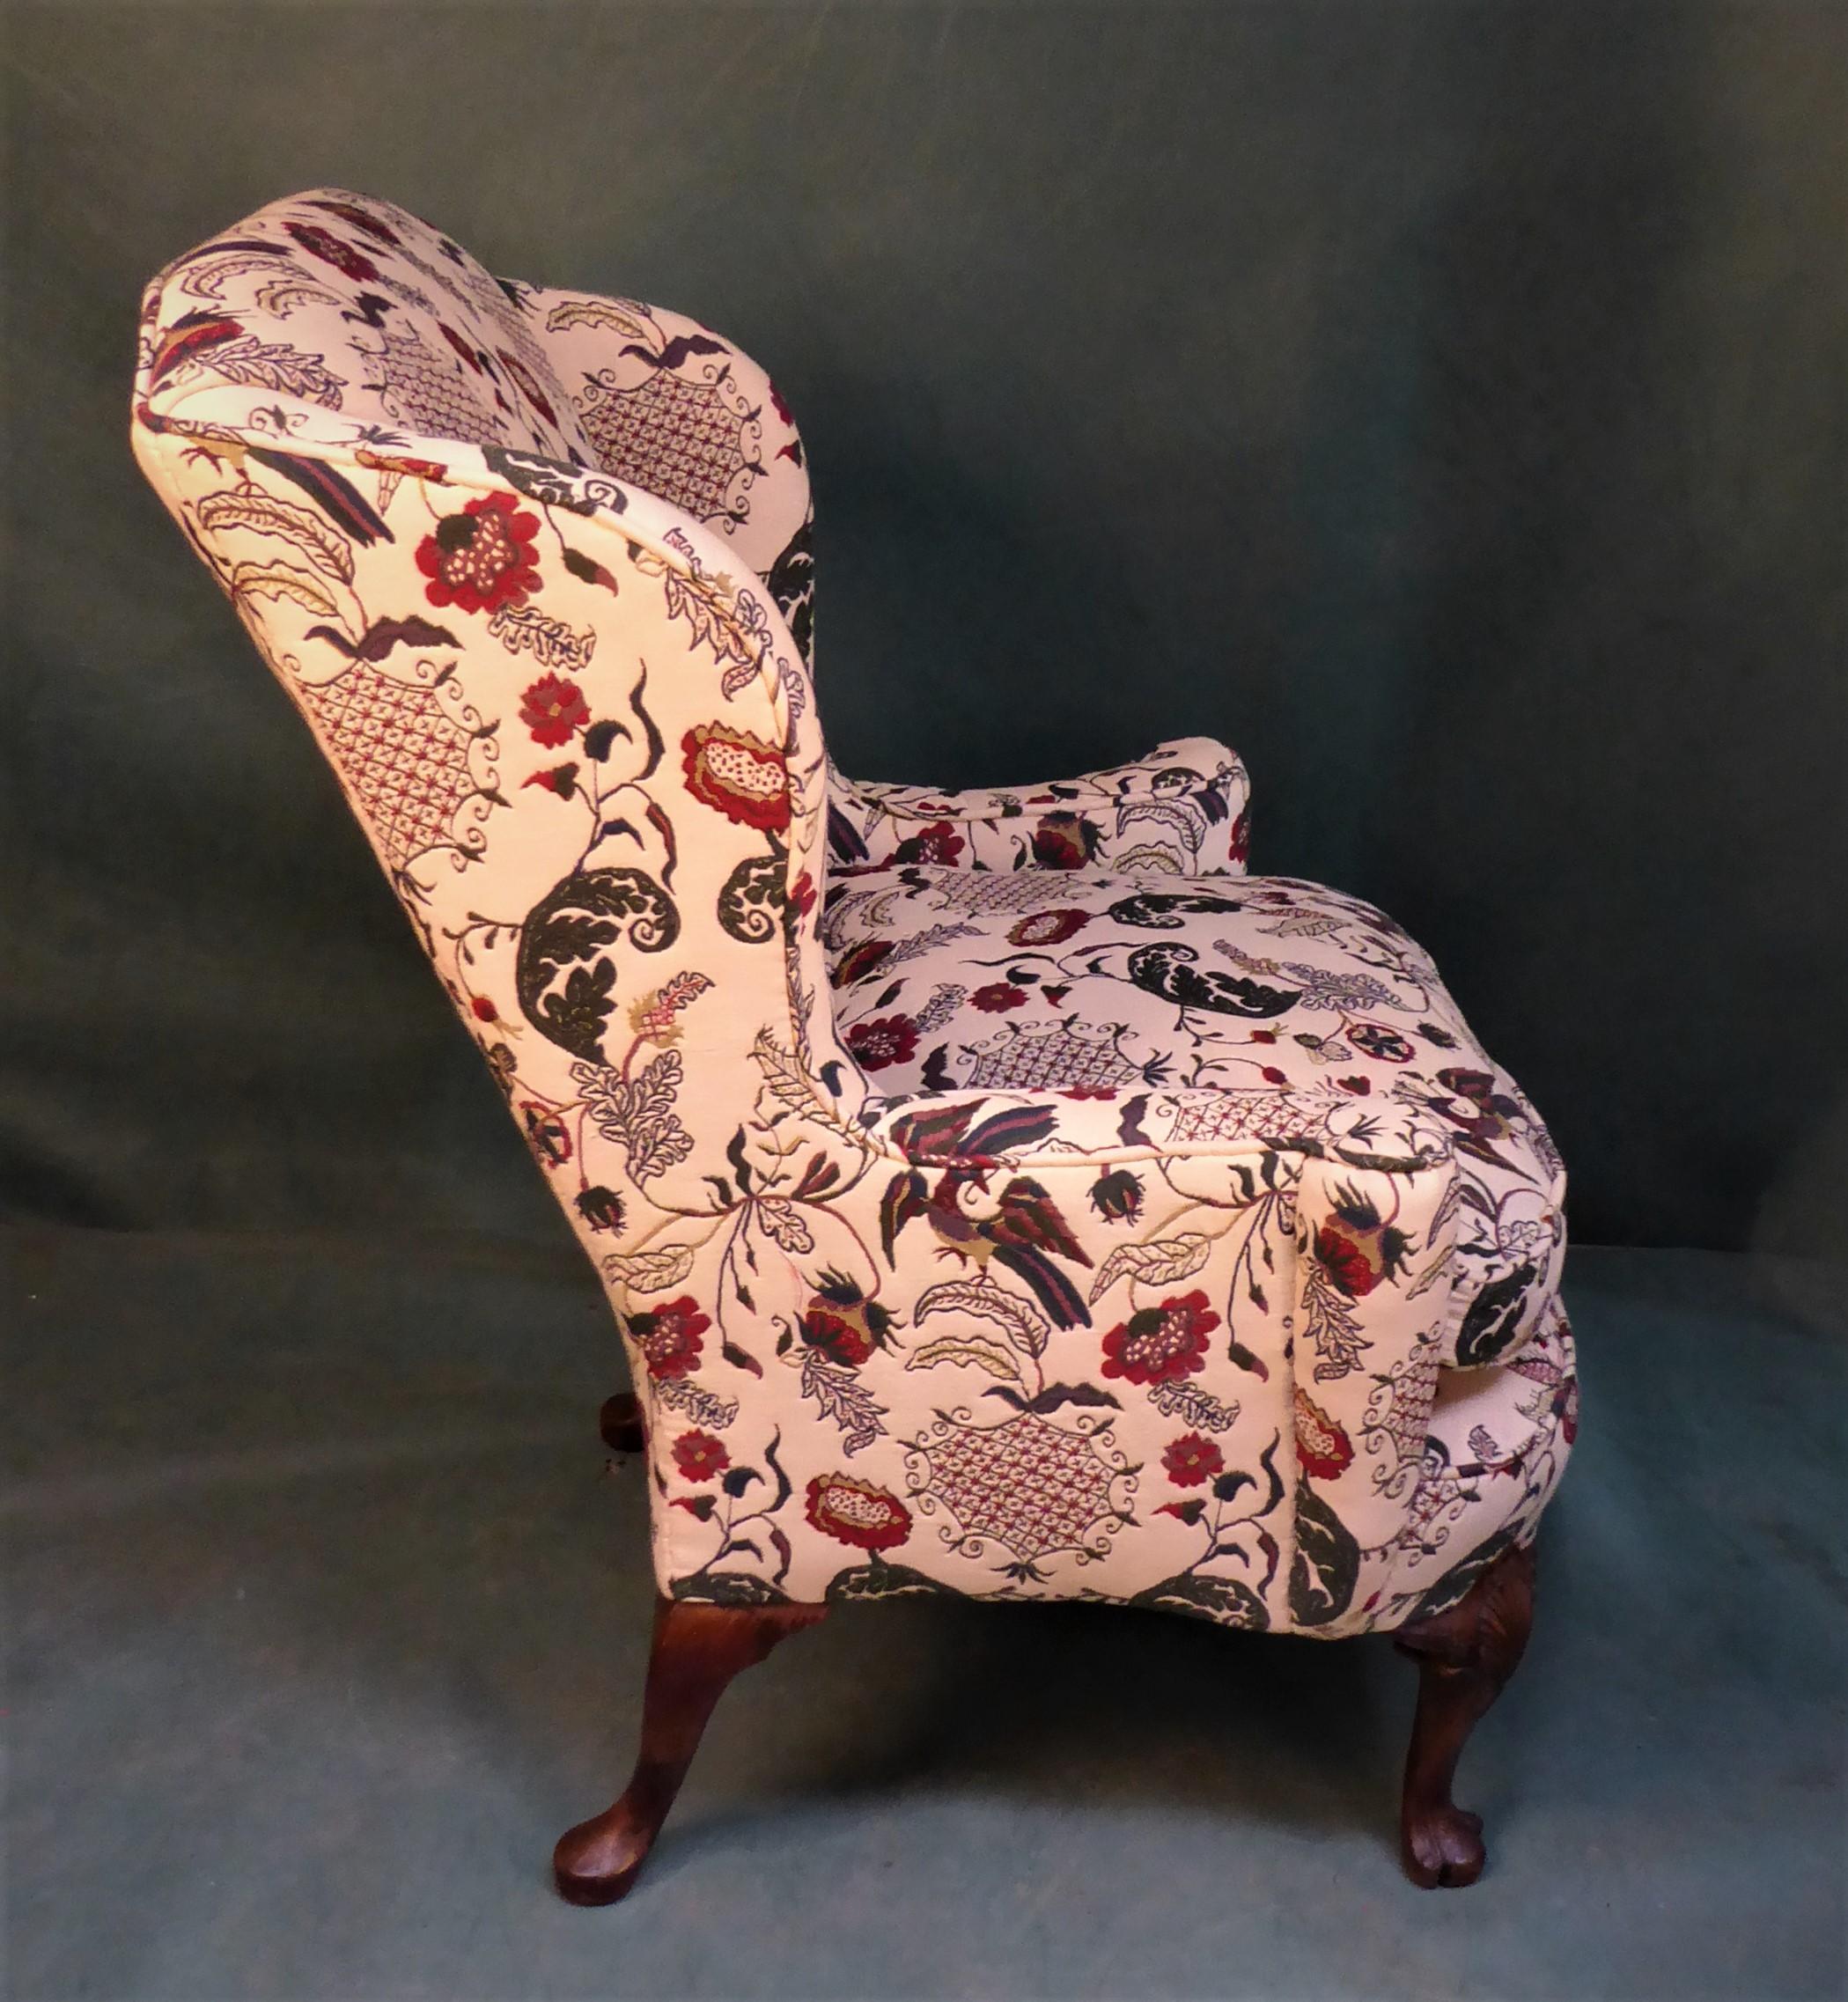 Cette chaise est souple  touche au confort une chaise pour se détendre confortable récemment retapissée dans un triple style tapisserie de laine matériau coloré de la plus haute qualité  rembourré avec du duvet pour donner une surprenante 
Fauteuil